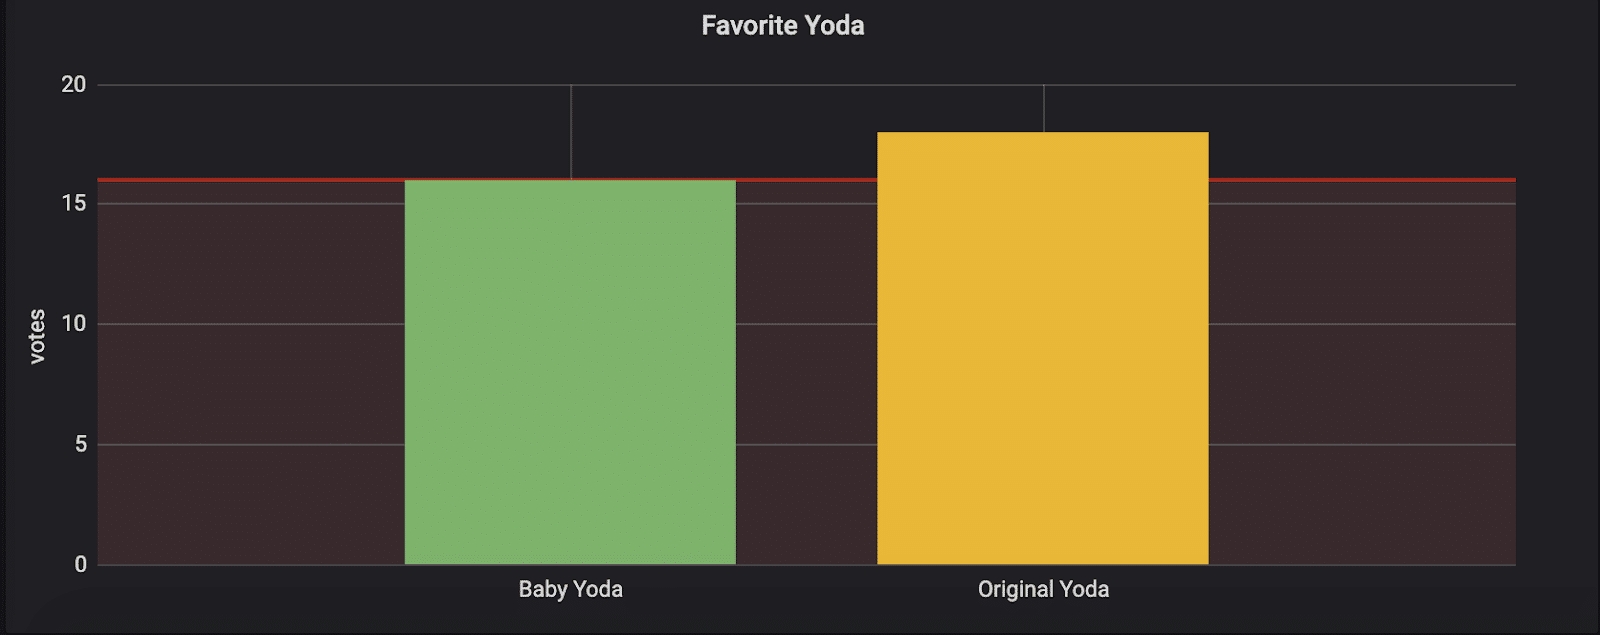 avorite Yoda (Grafana dashboard)